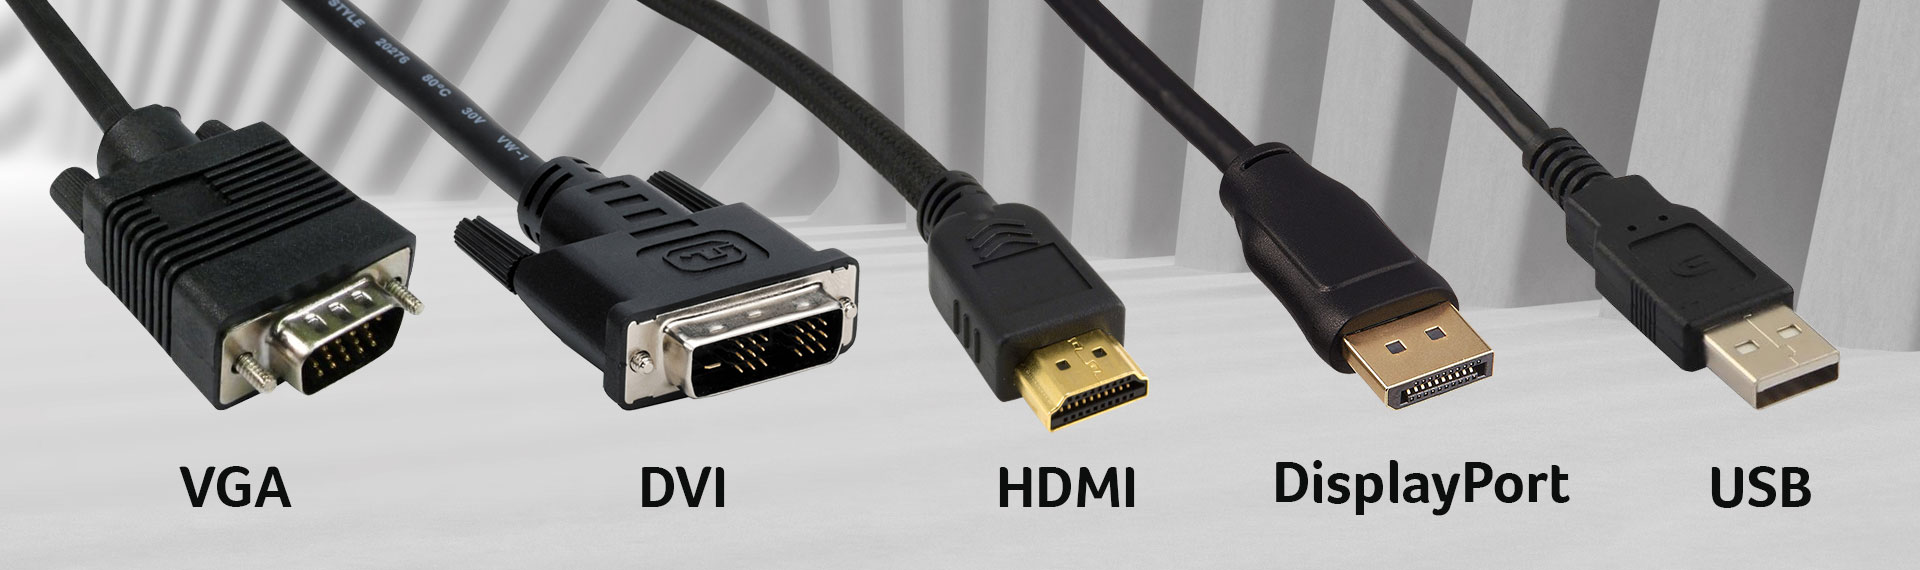 Jenis-Jenis Kabel Konektor, Perbedaan dan Kegunaannya